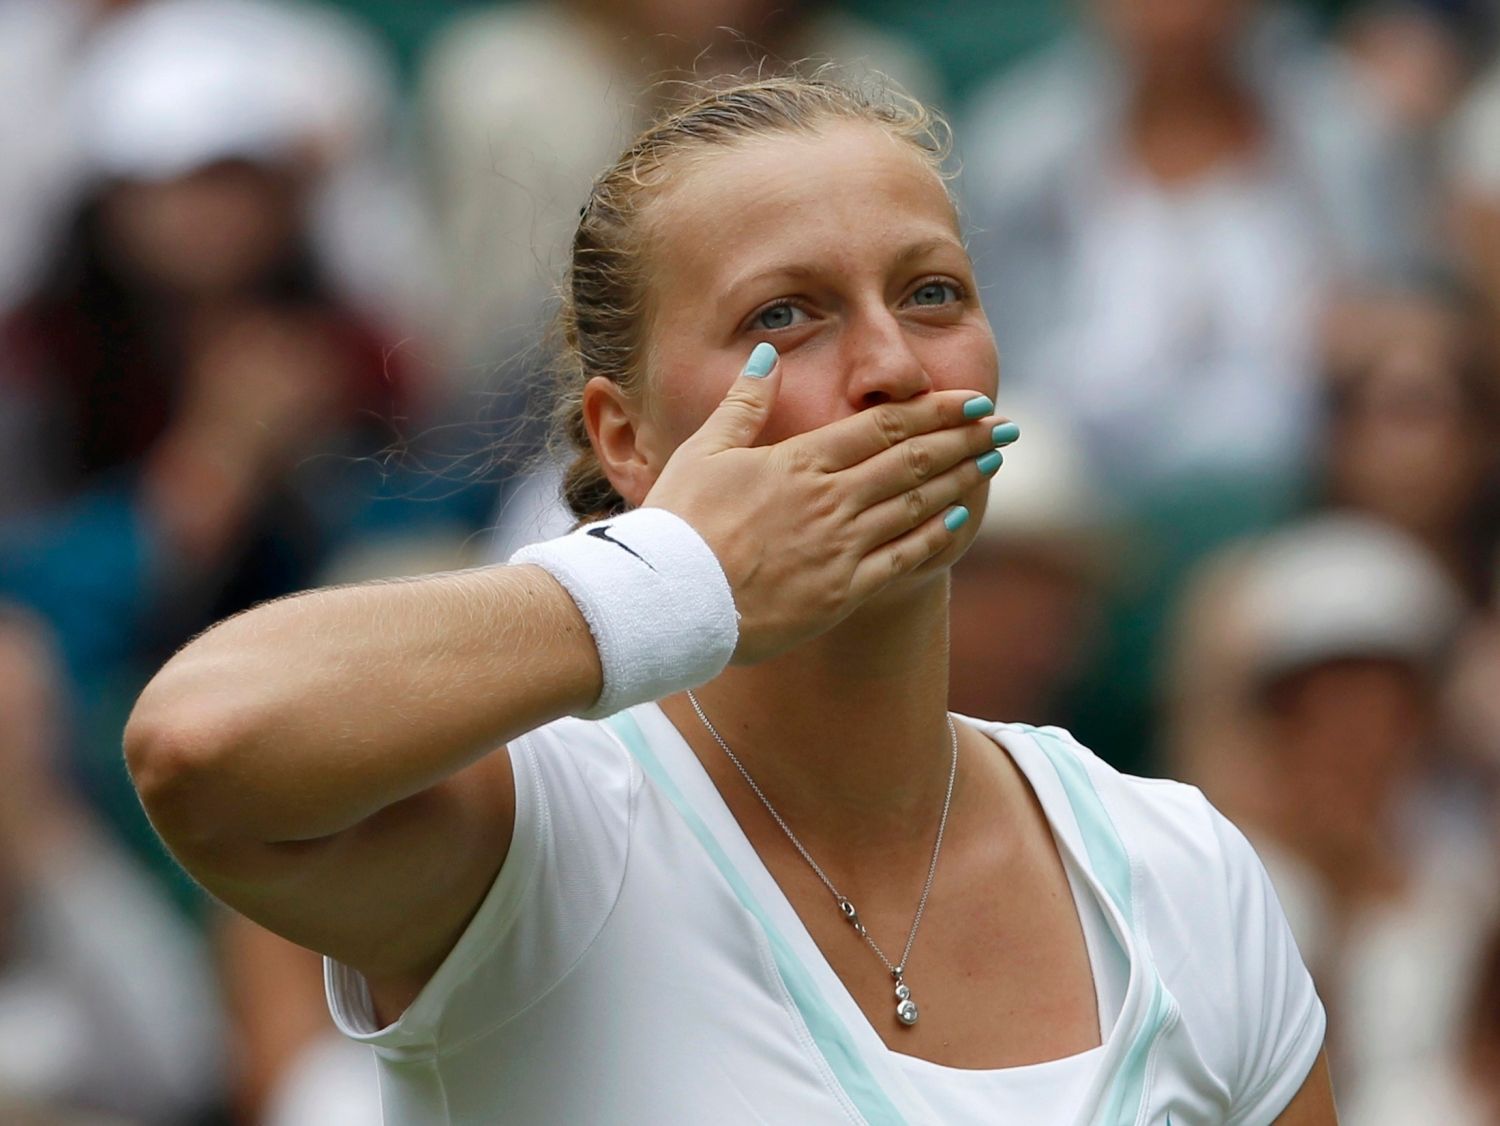 Česká tenistka Petra Kvitová děkuje fanouškům v 1. kole Wimbledonu 2012.